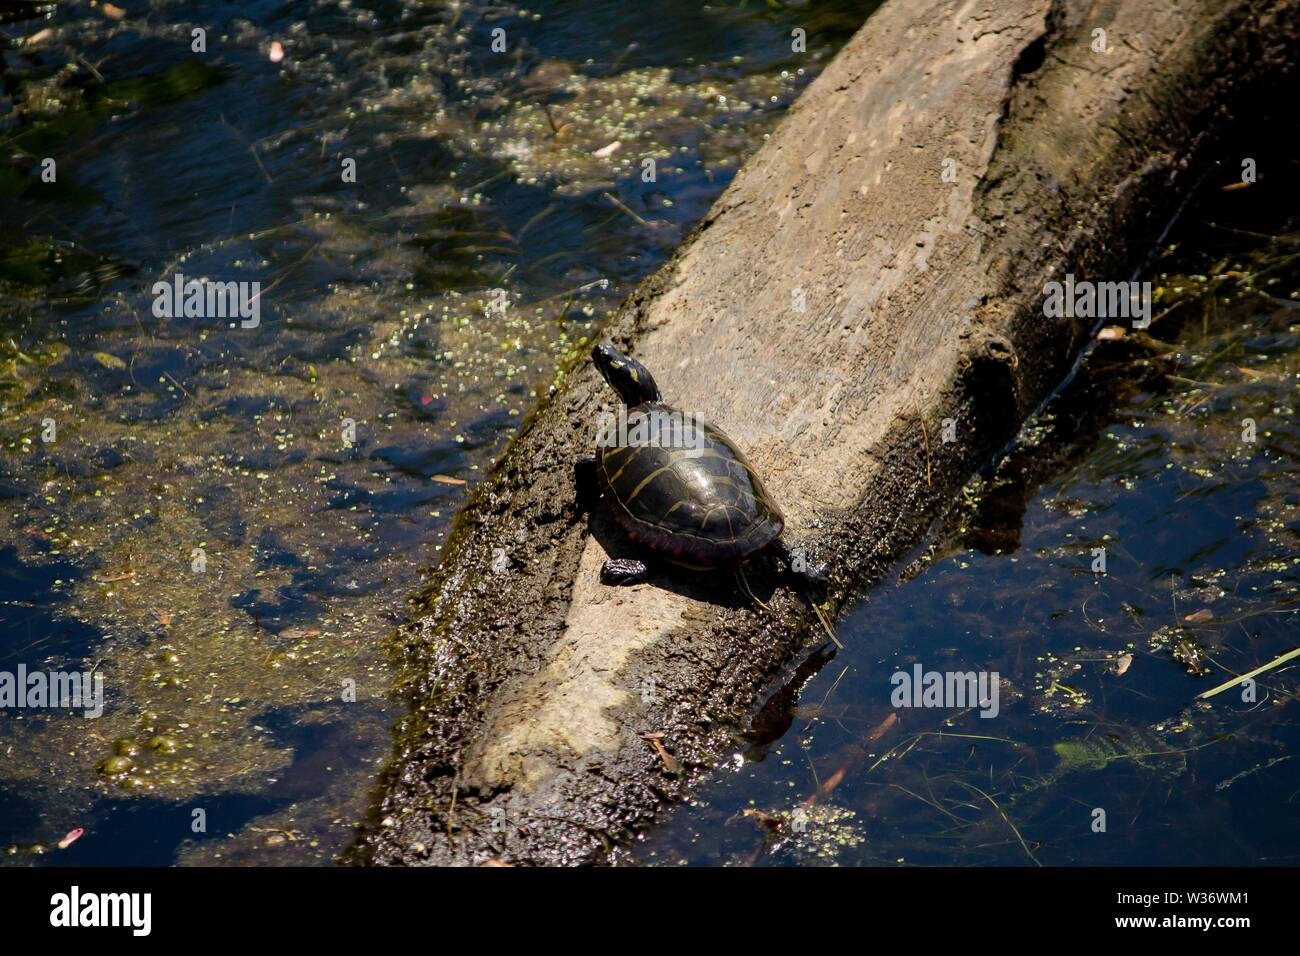 Primo piano di una tartaruga dipinta che poggia su un ramo in acqua Foto Stock